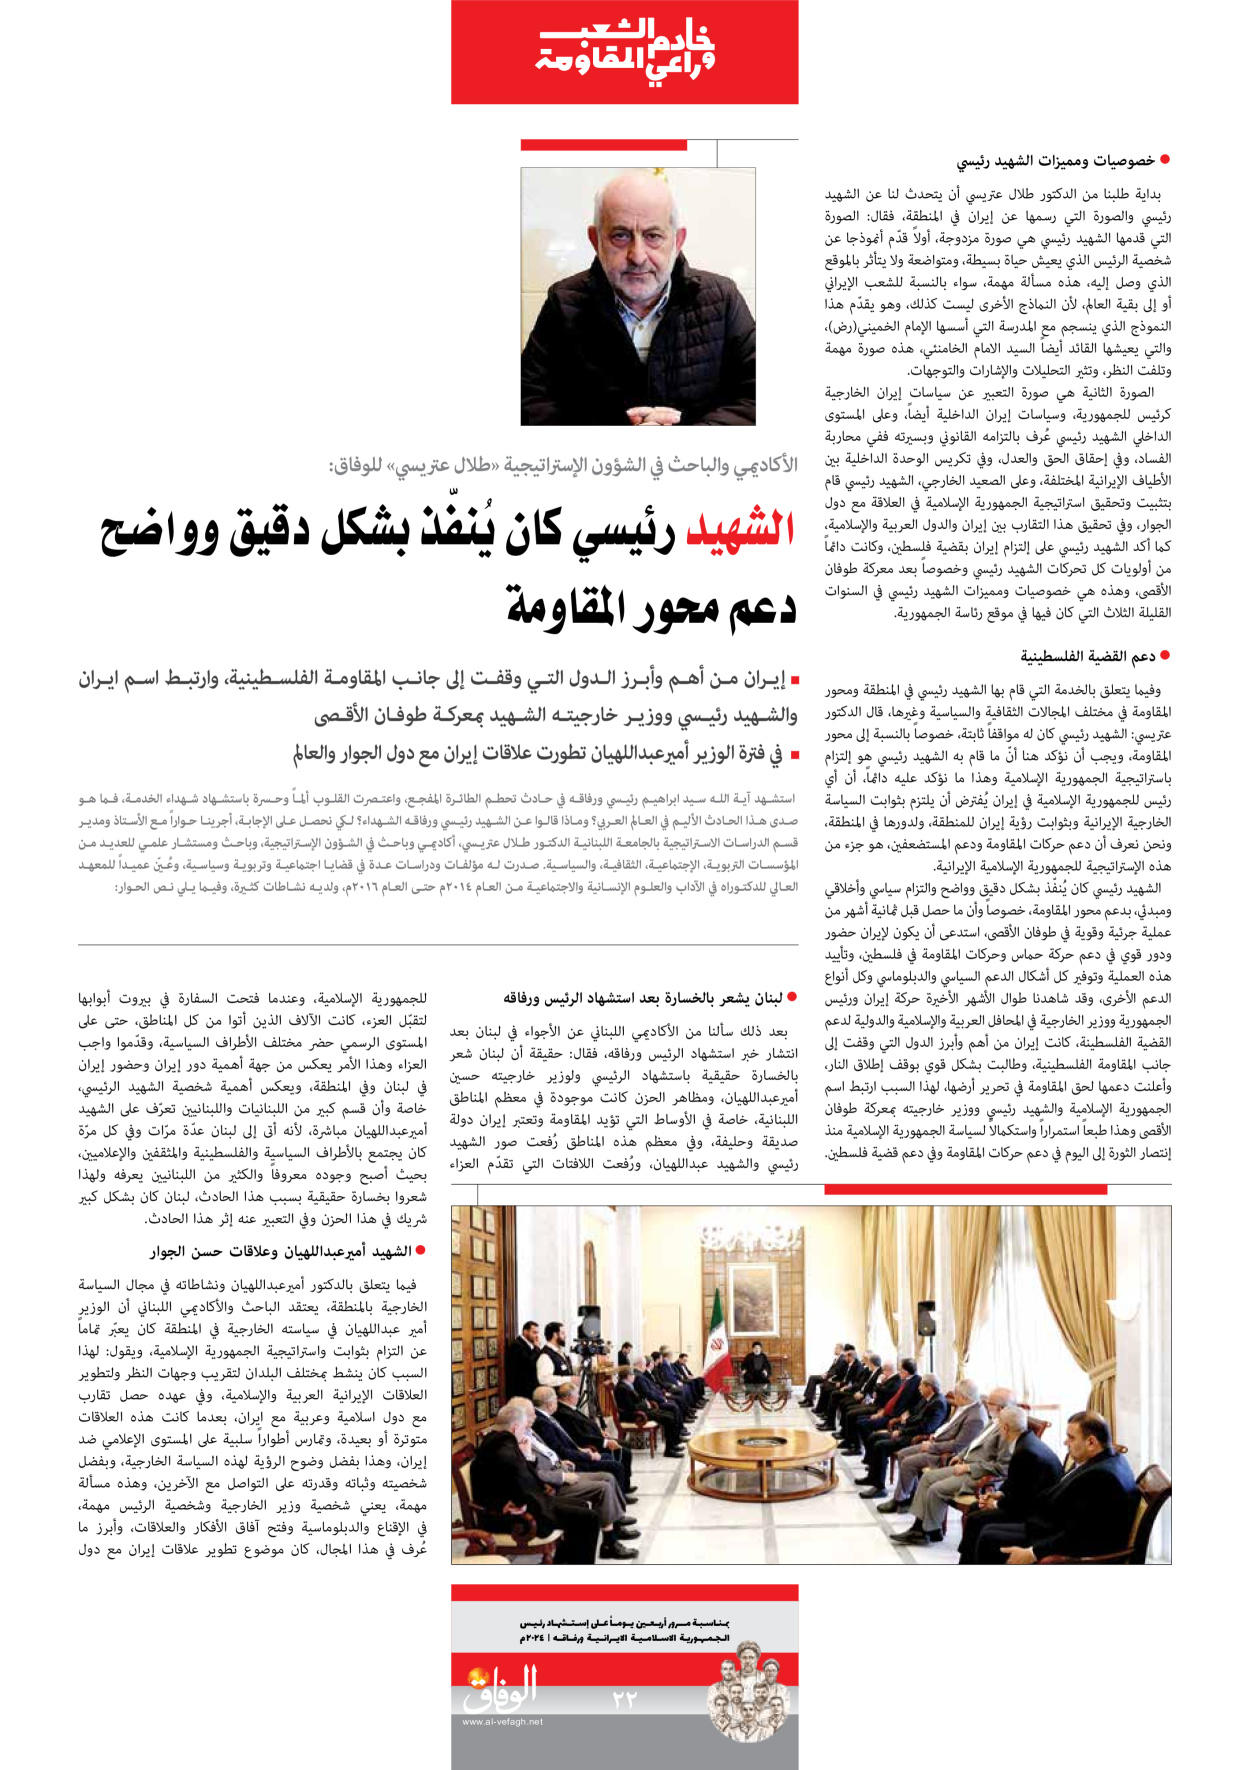 صحیفة ایران الدولیة الوفاق - ملحق ویژه نامه چهلم شهید رییسی - ٢٩ يونيو ٢٠٢٤ - الصفحة ۲۲